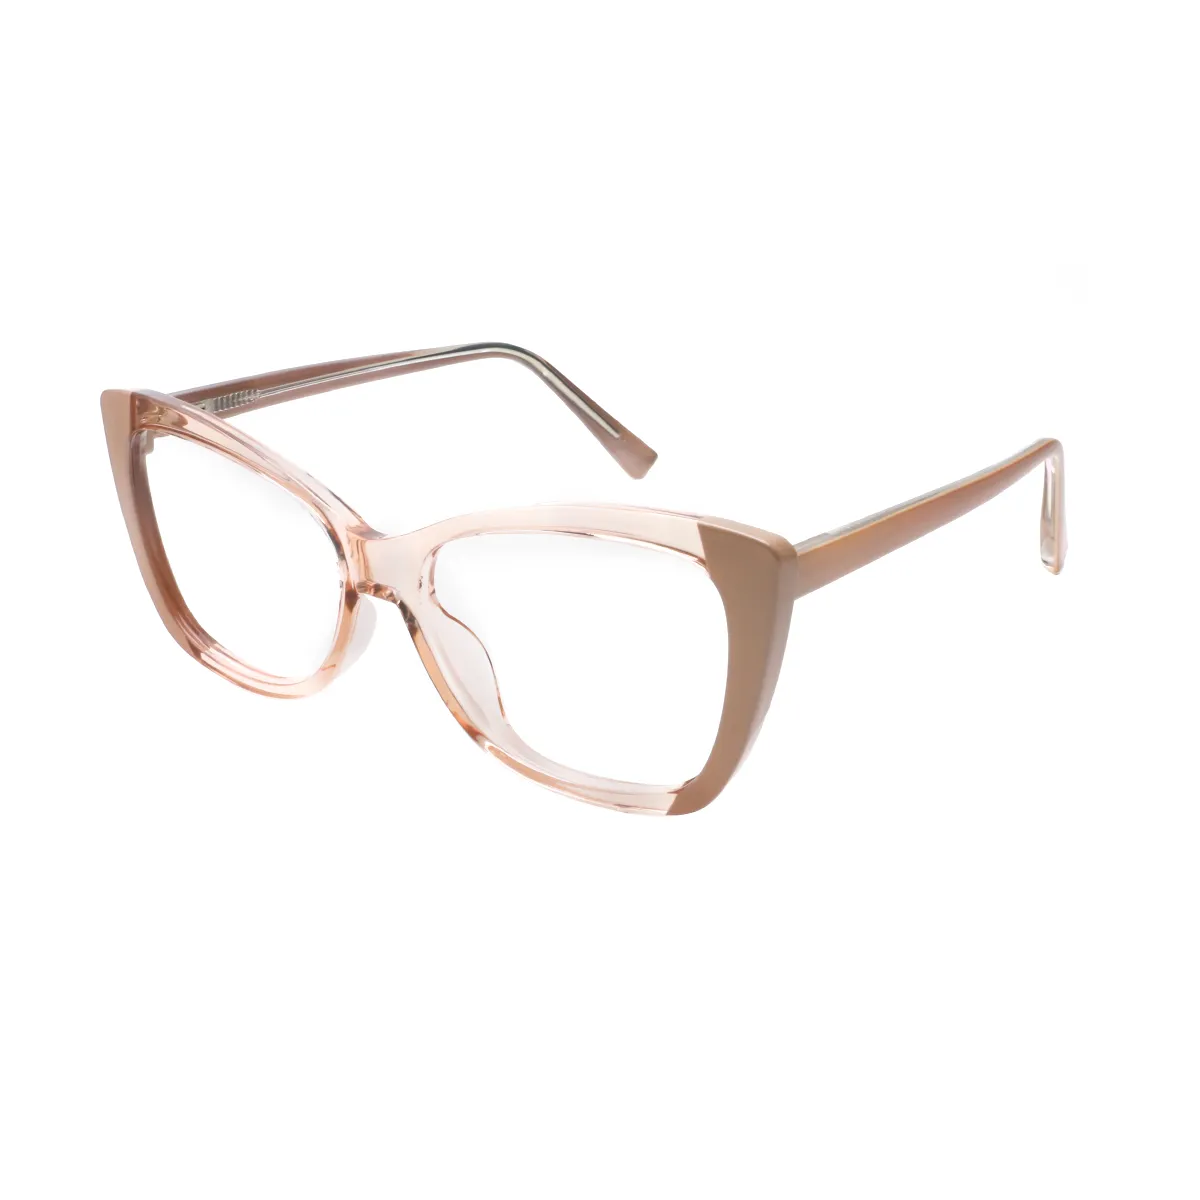 Devin - Cat-eye Pink-Tortoiseshell Glasses for Women - EFE